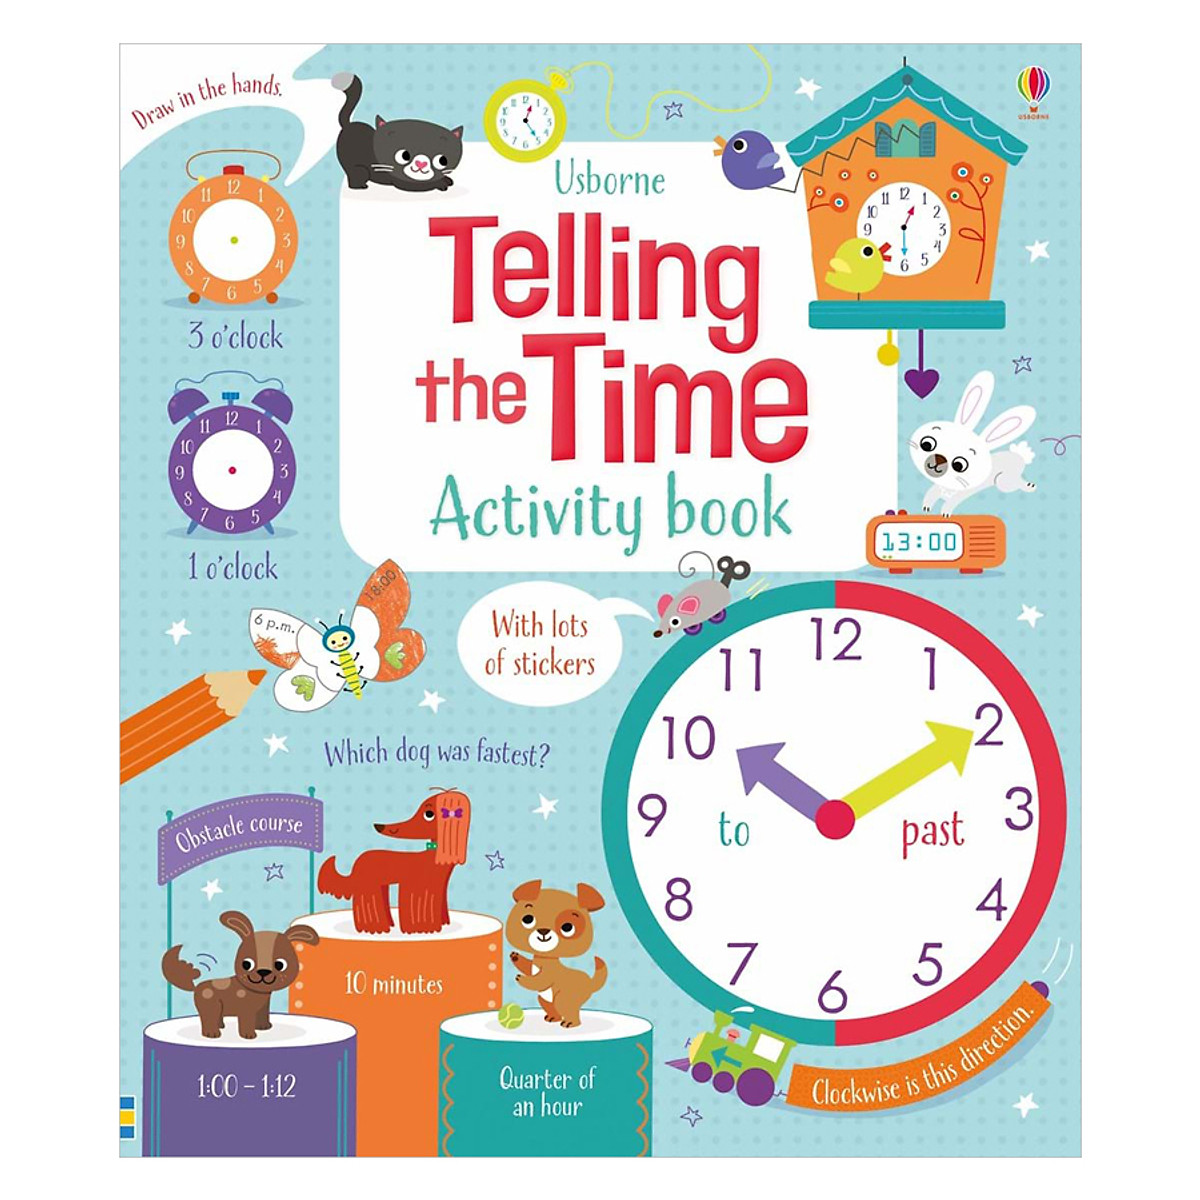 Sách tương tác tiếng Anh - Usborne Telling the Time Activity Book